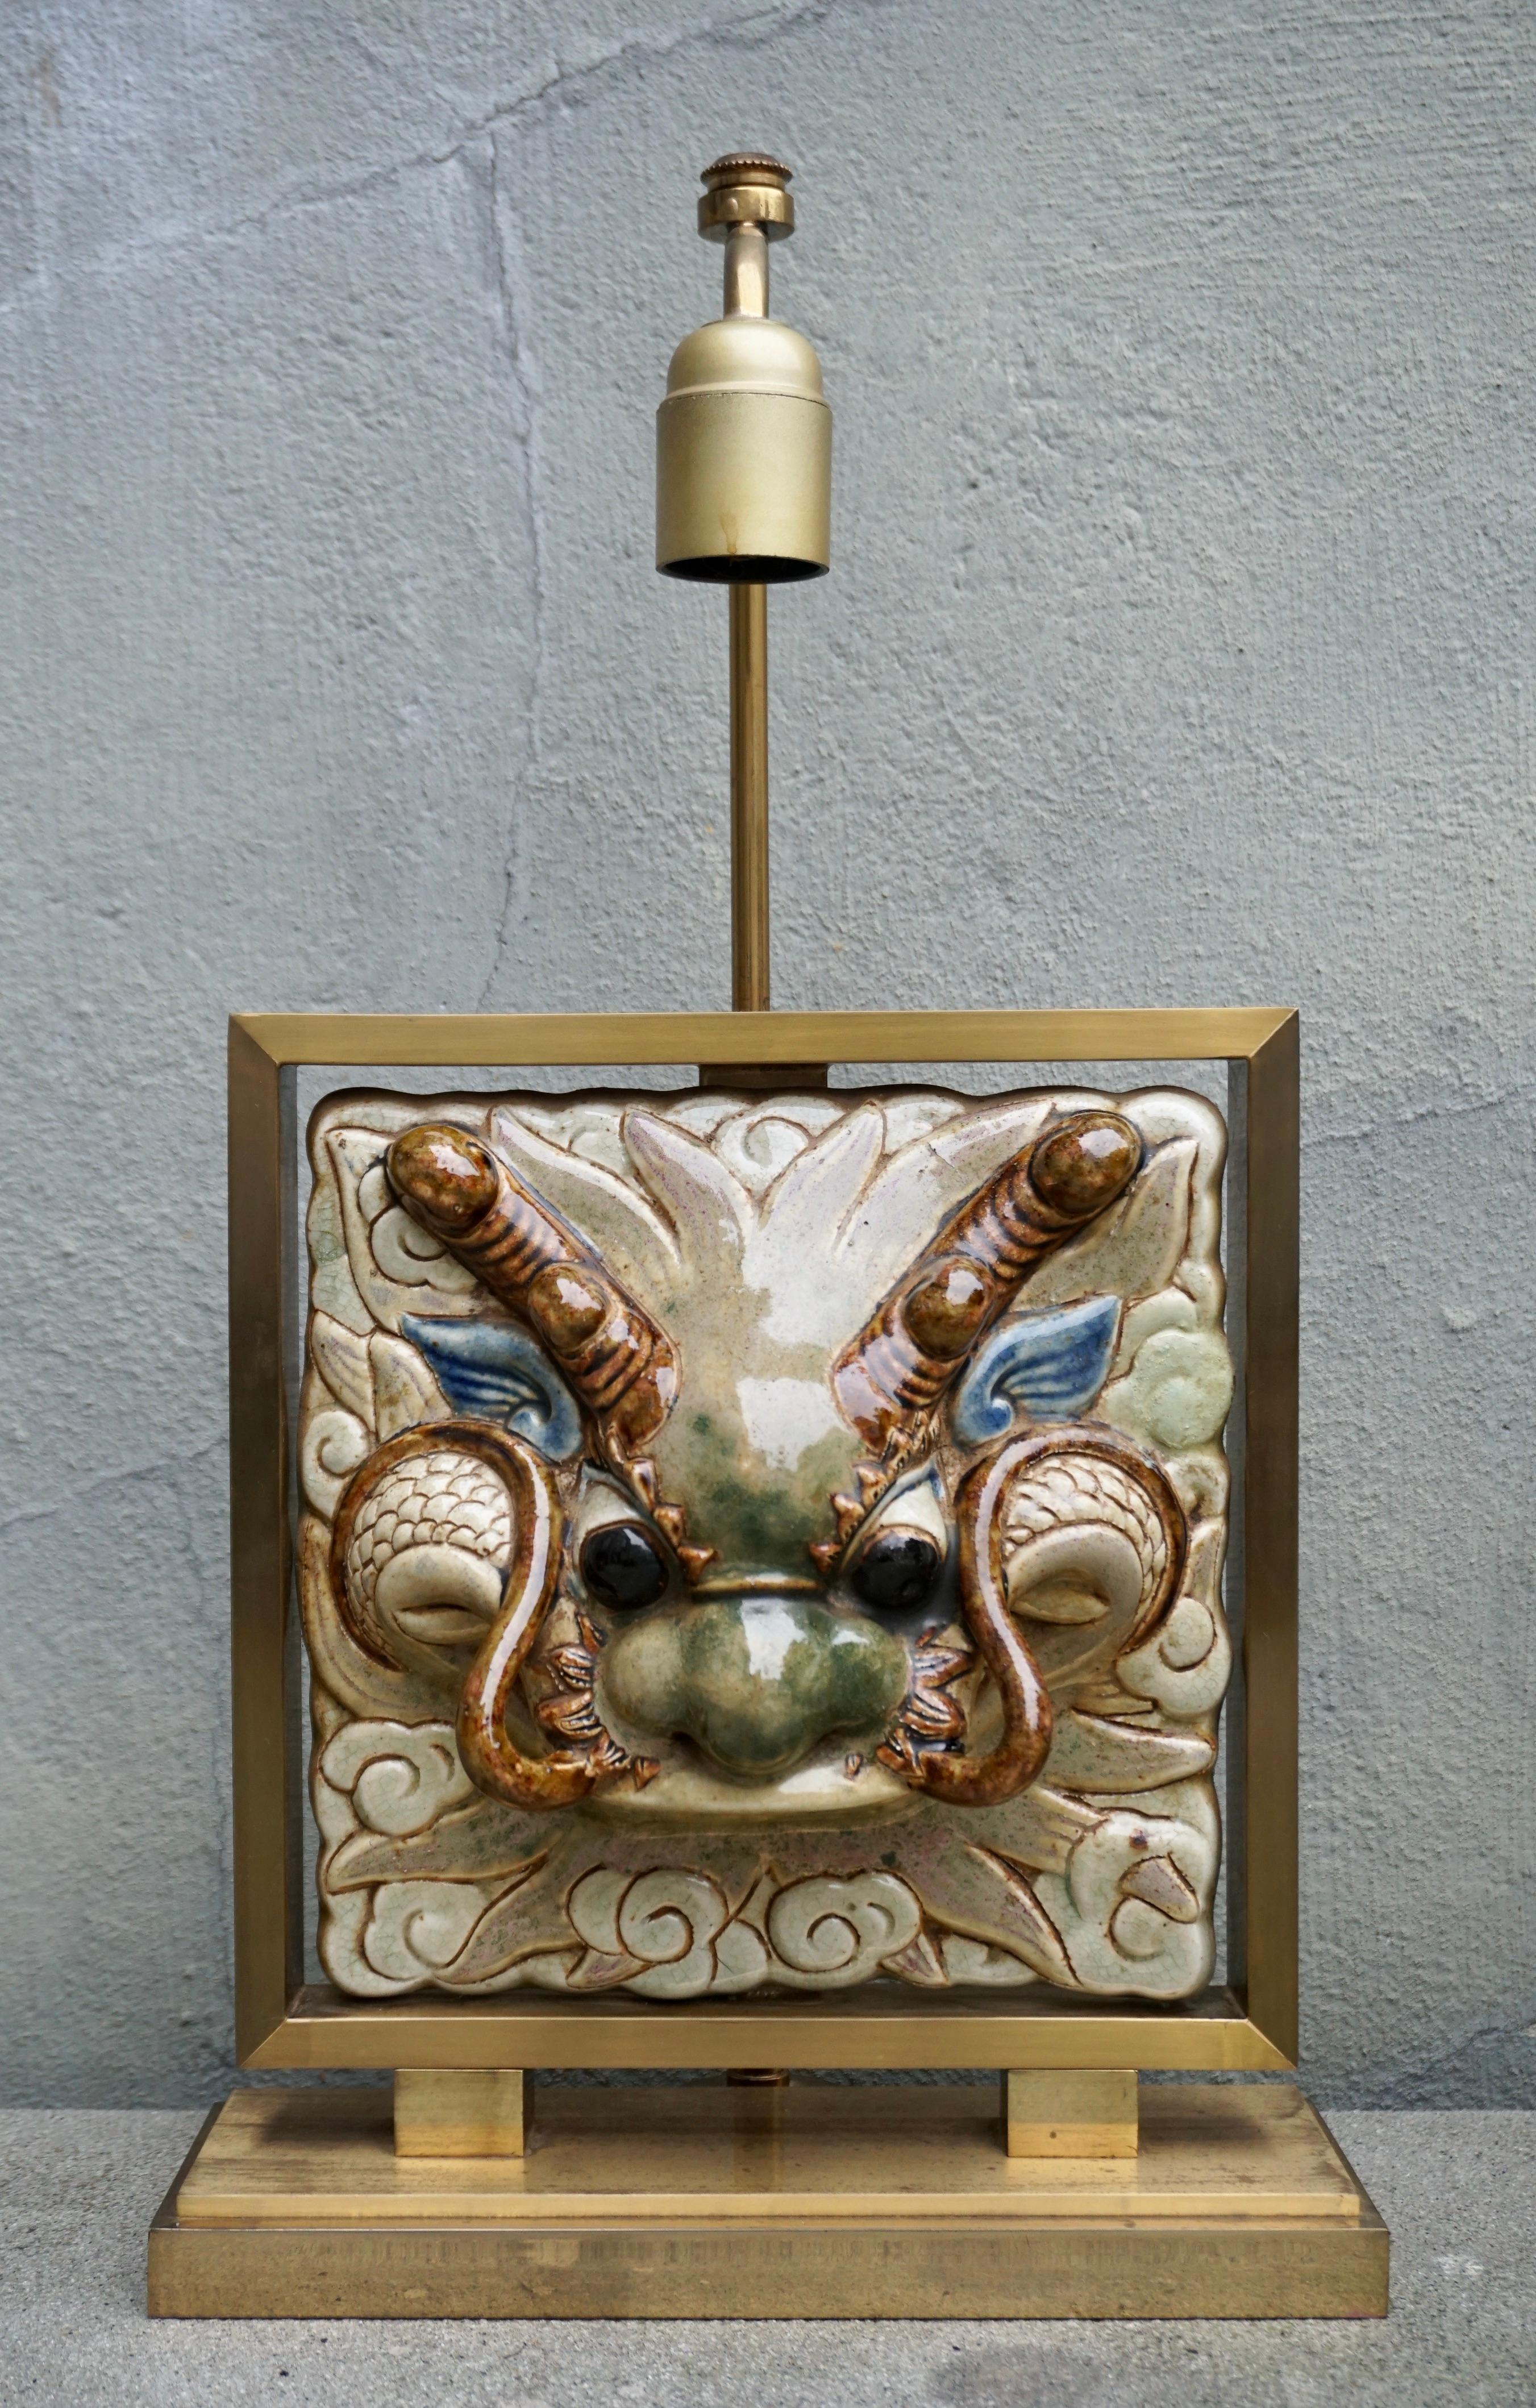 Rare et magnifique lampe de table avec une tête de dragon en céramique.

Hauteur totale 50 cm.
Hauteur du cadre en laiton : 29 cm.